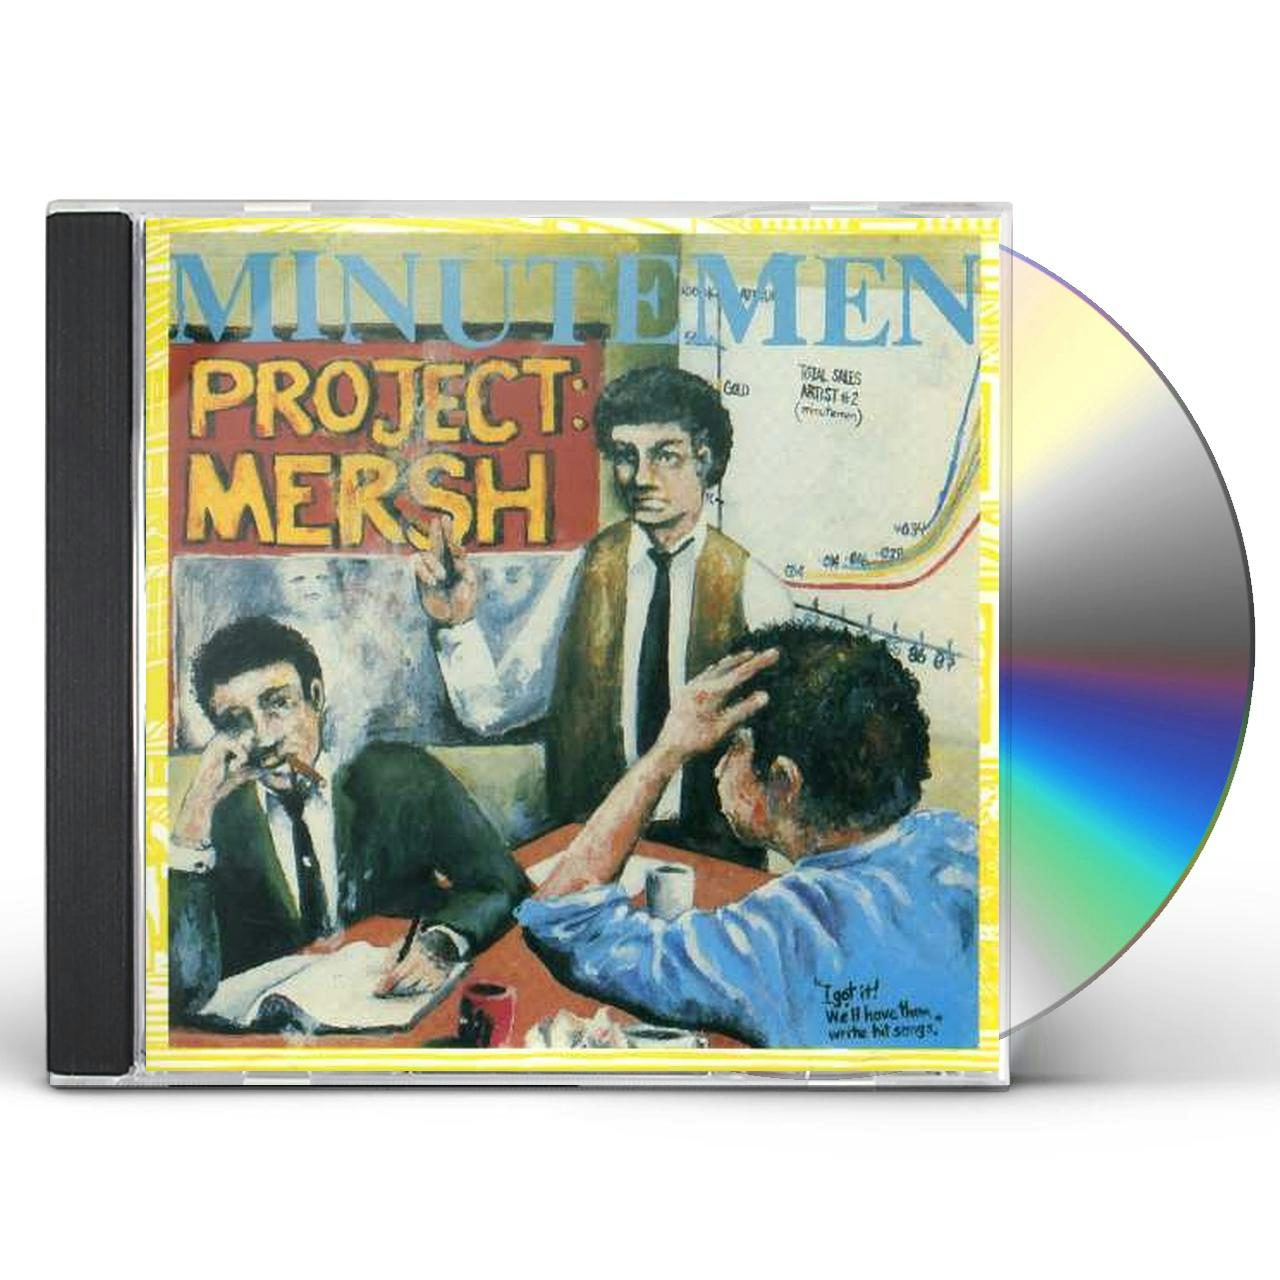 project mersh cd - Minutemen